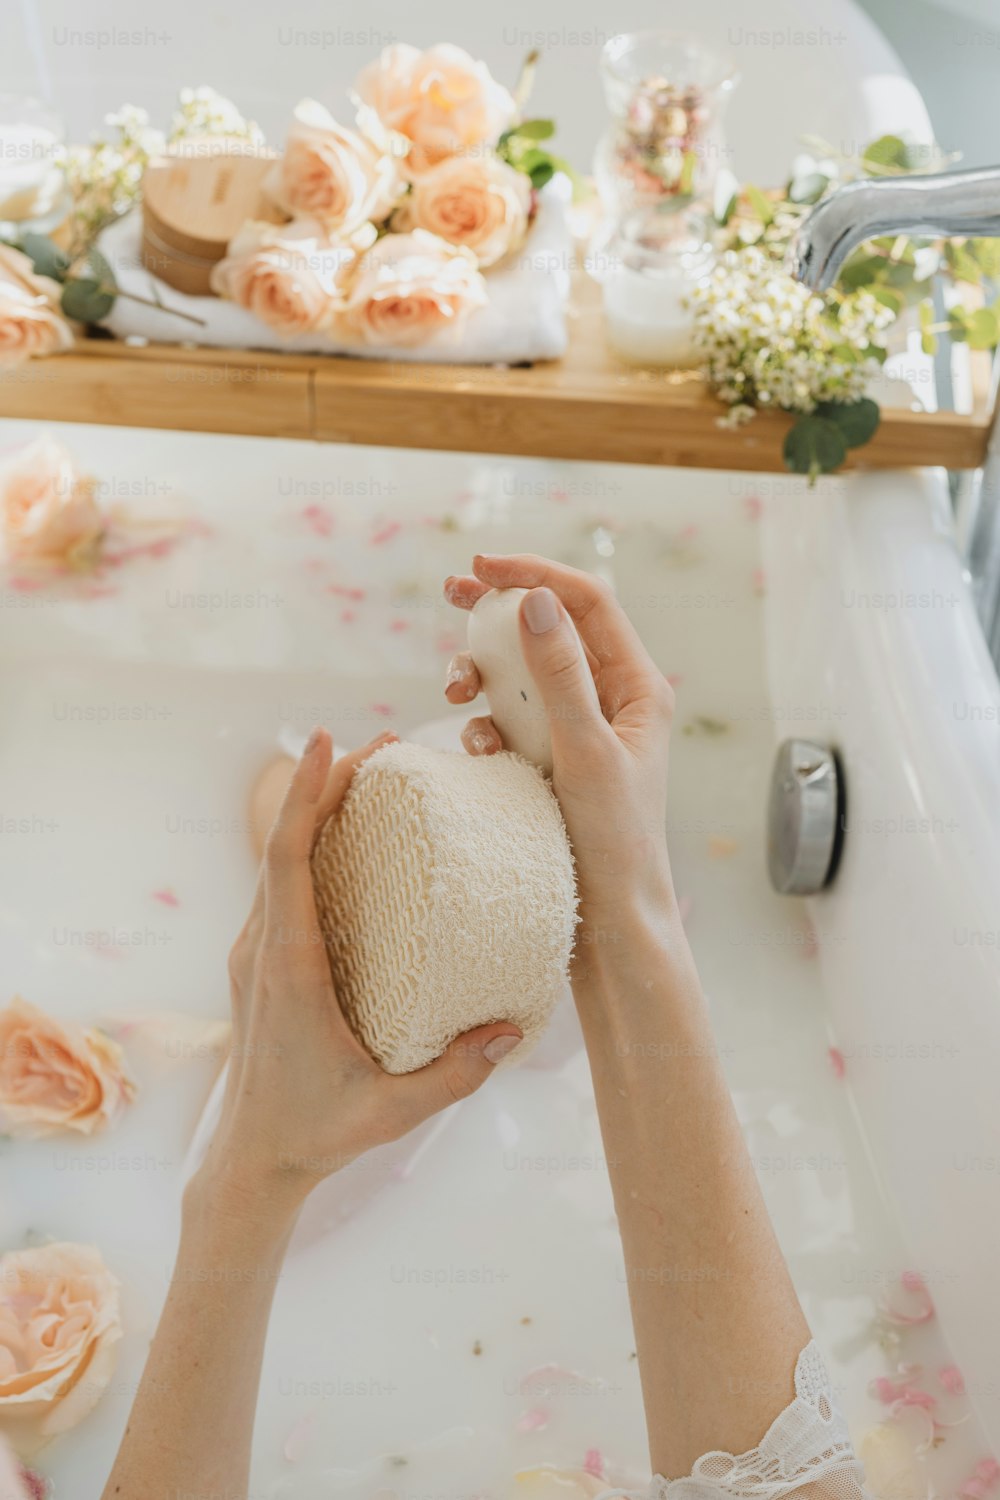 Eine Frau wäscht sich in einer Badewanne die Hände